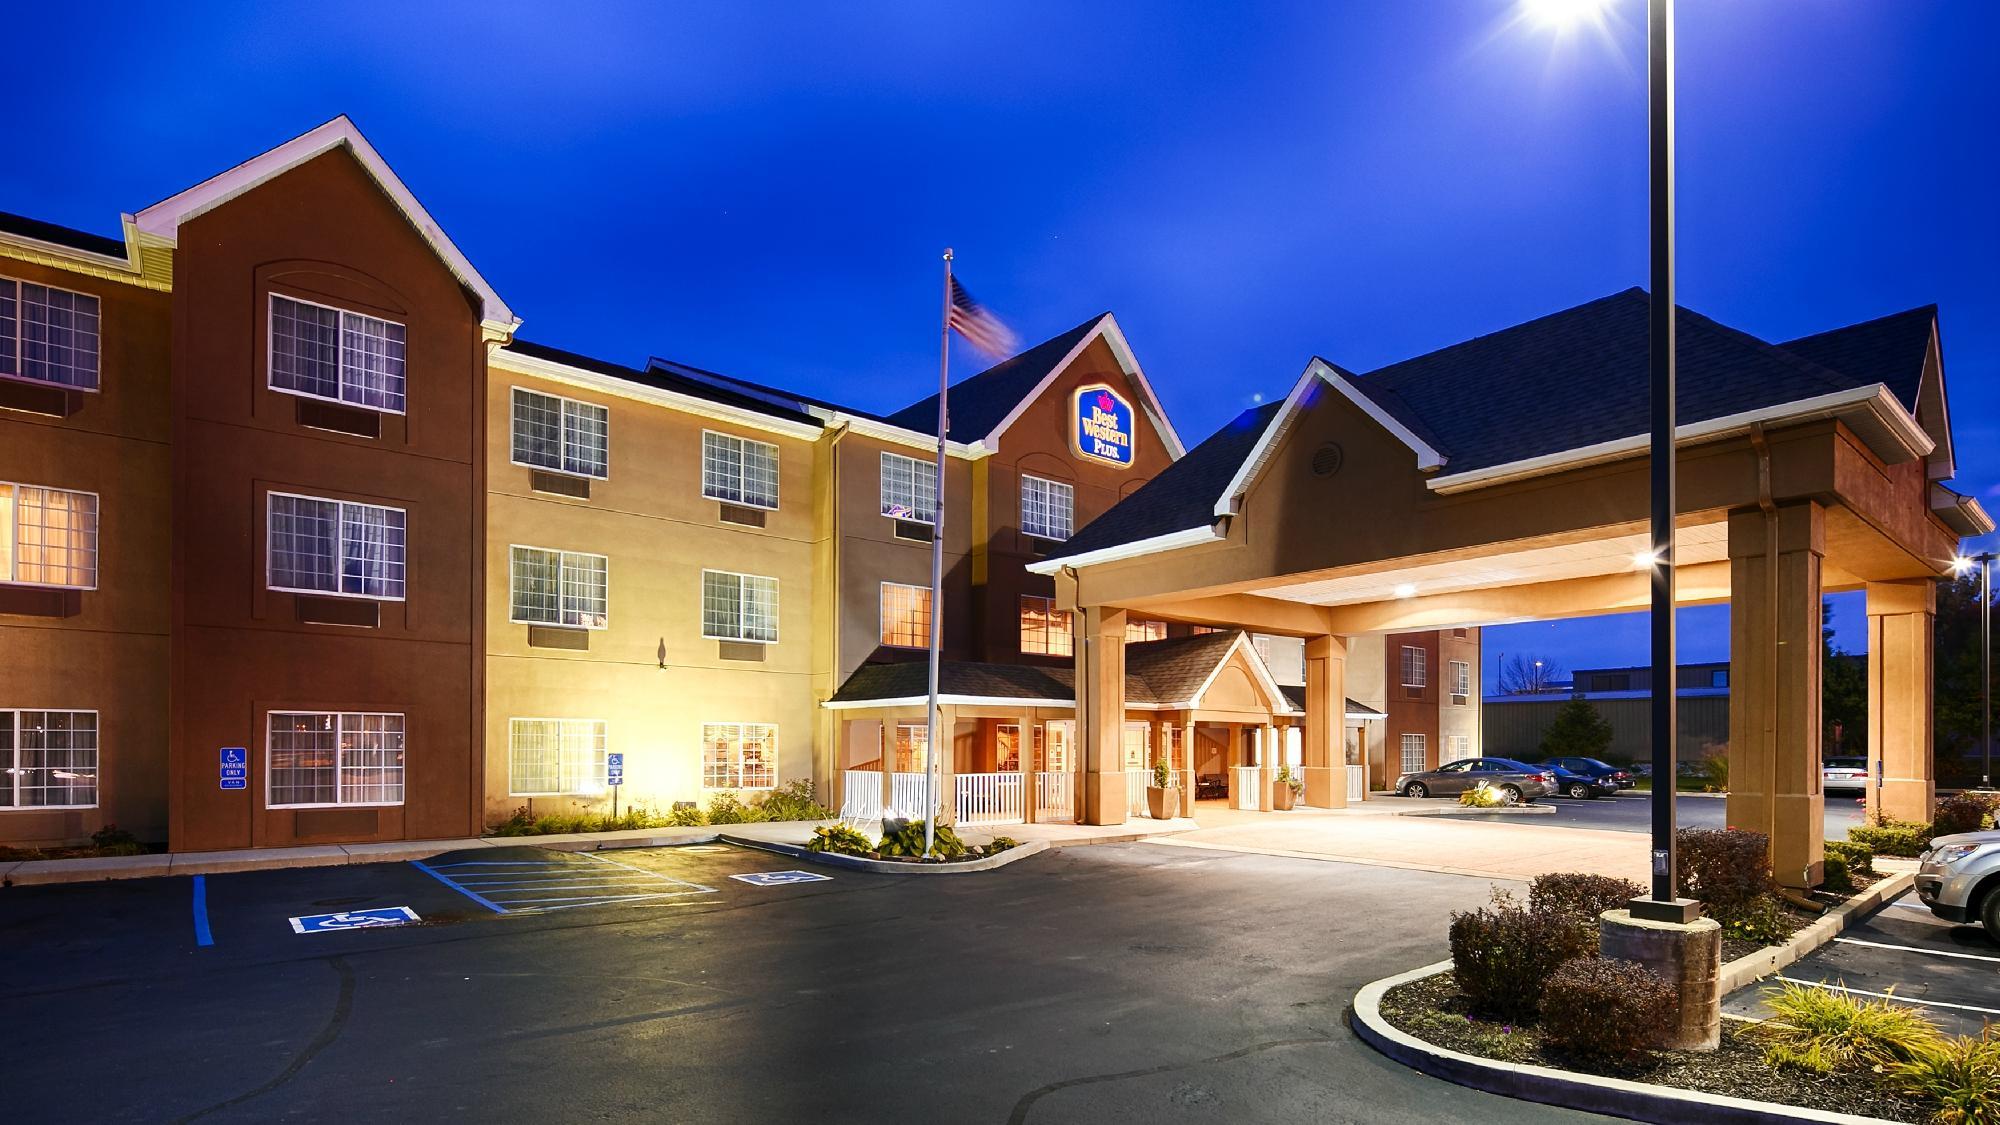 Photo of Best Western Plus Fort Wayne Inn & Suites North, Fort Wayne, IN